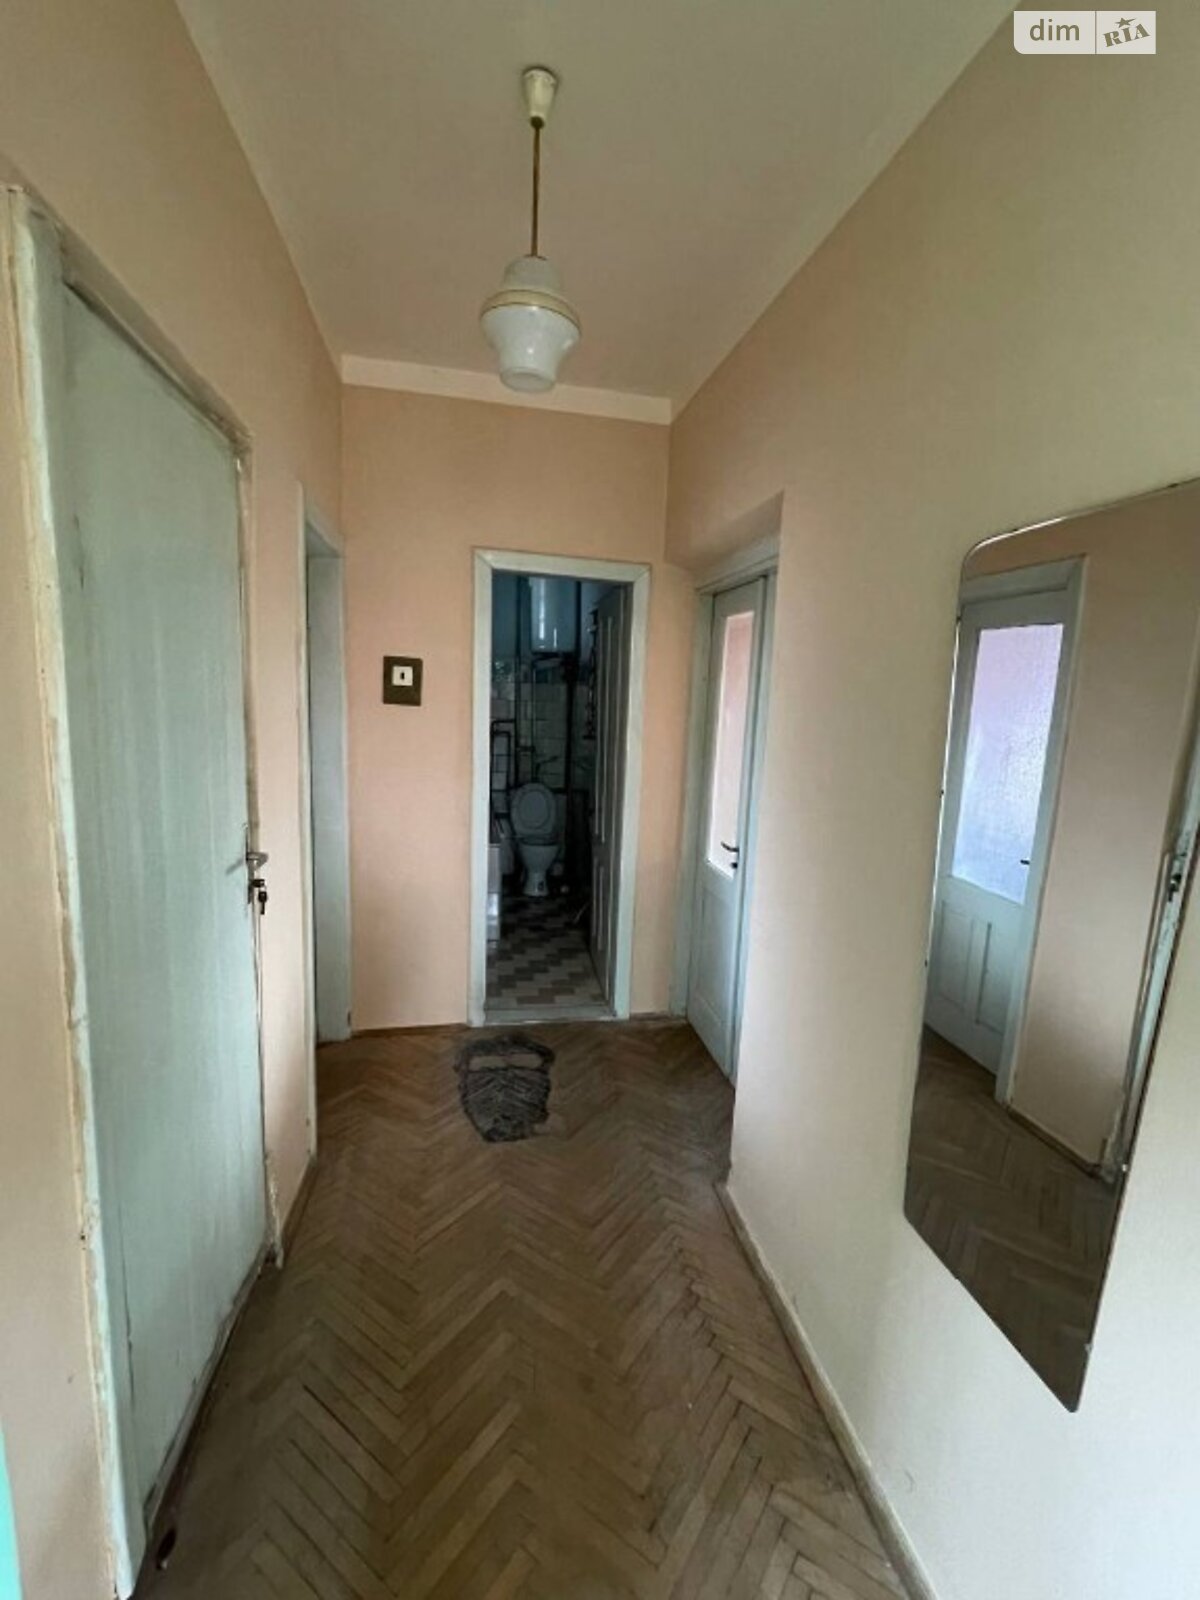 Продажа части дома в Винниках, улица Грушевского, 6 комнат фото 1